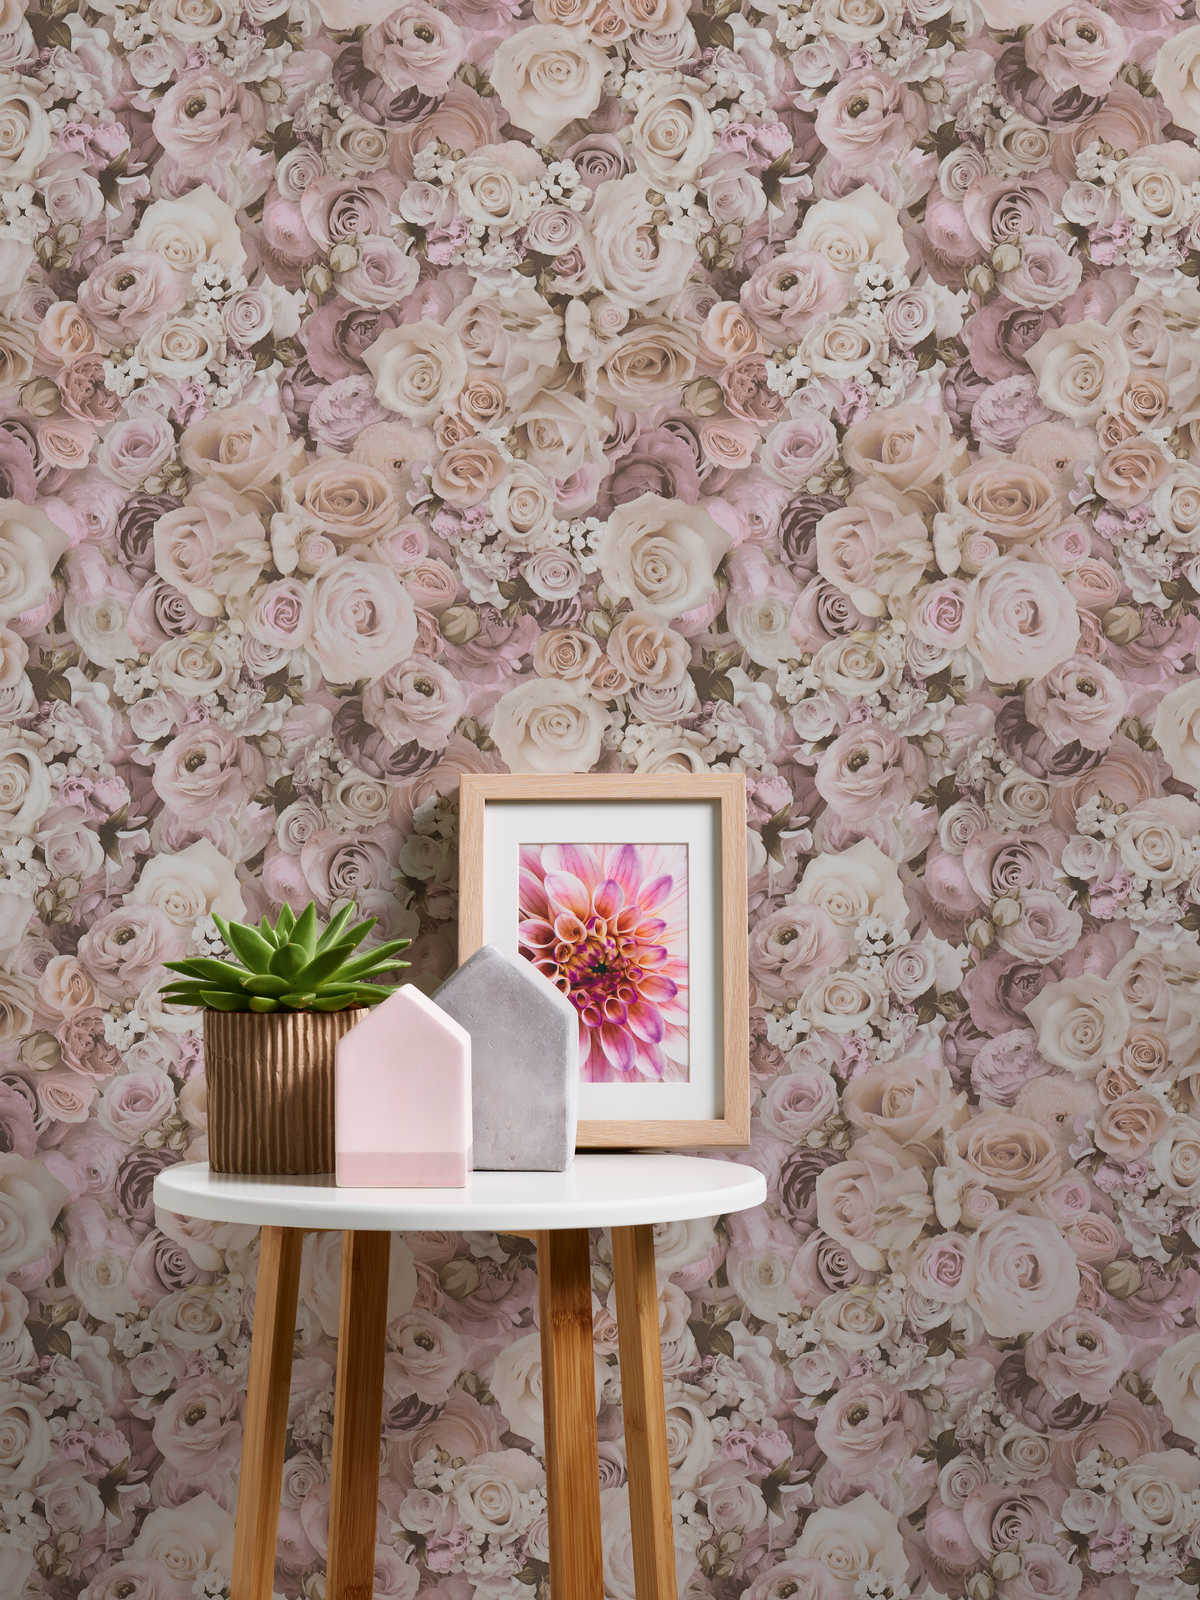             Papel pintado autoadhesivo | estampado floral con rosas - rosa, crema
        